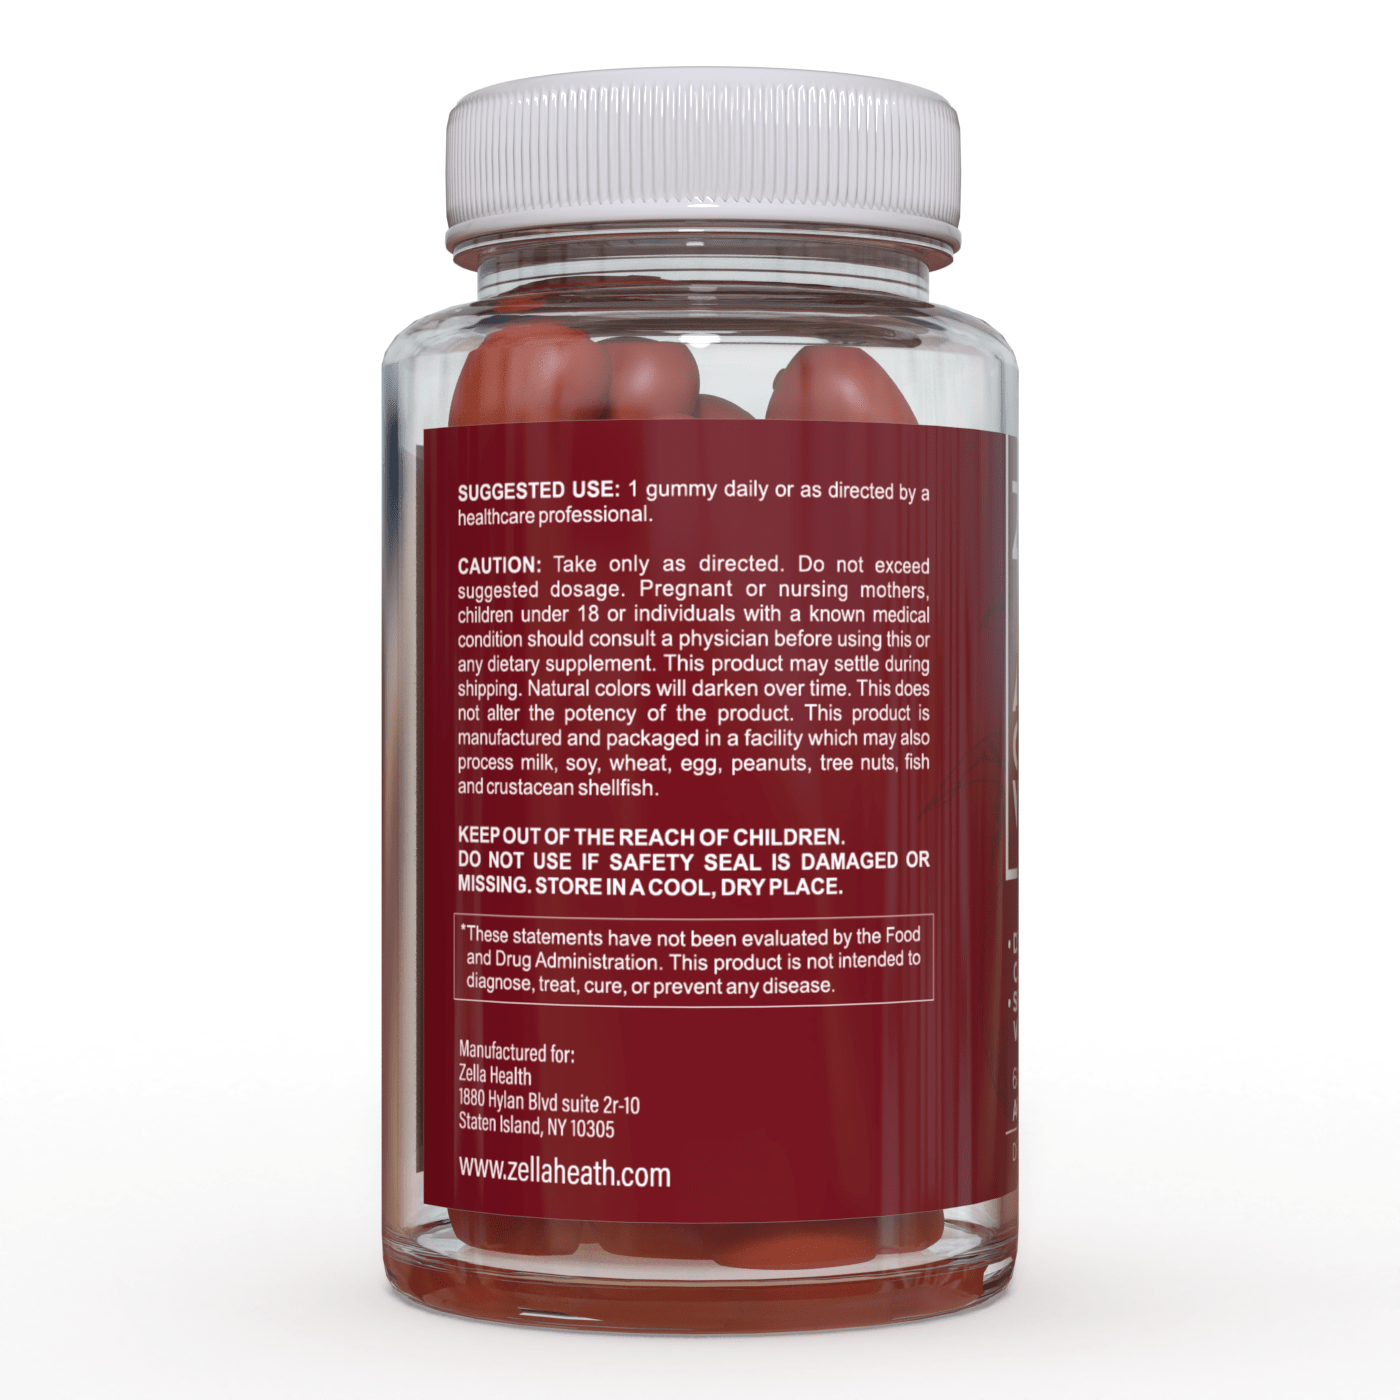 
                  
                    Gomitas de vinagre de sidra de manzana, suplemento de inmunidad, desintoxicación, limpieza y control de peso - Zella Health - 60 piezas
                  
                